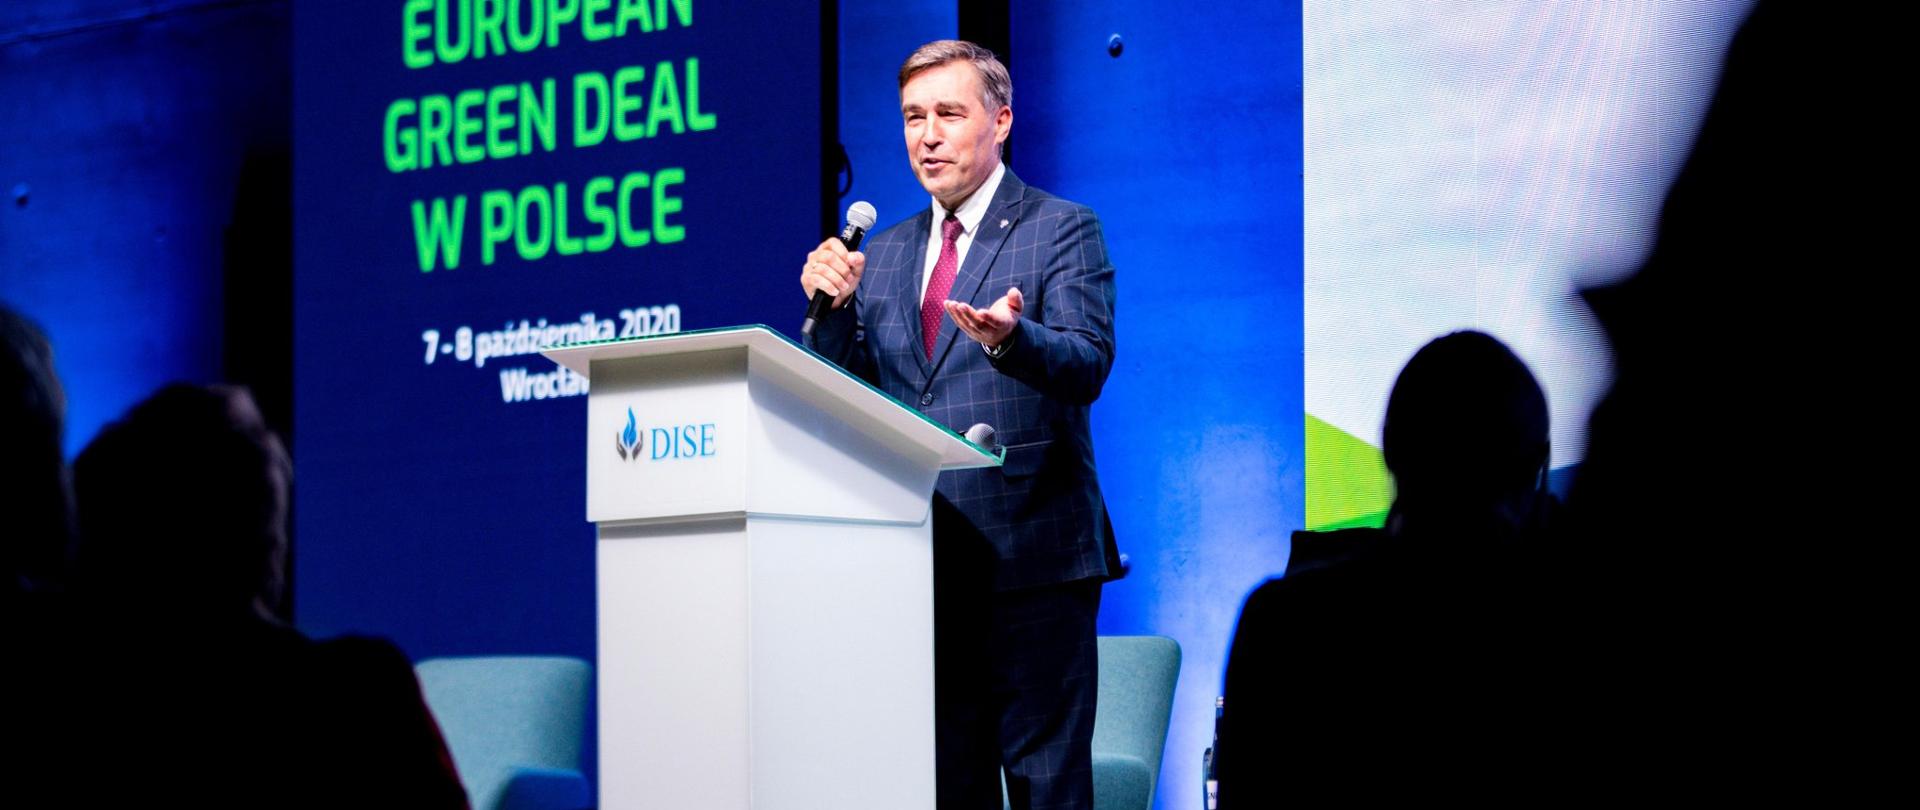 Wiceminister Zbigniew Gryglas przemawia z mównicy na tle ekranu z nazwą konferencji.